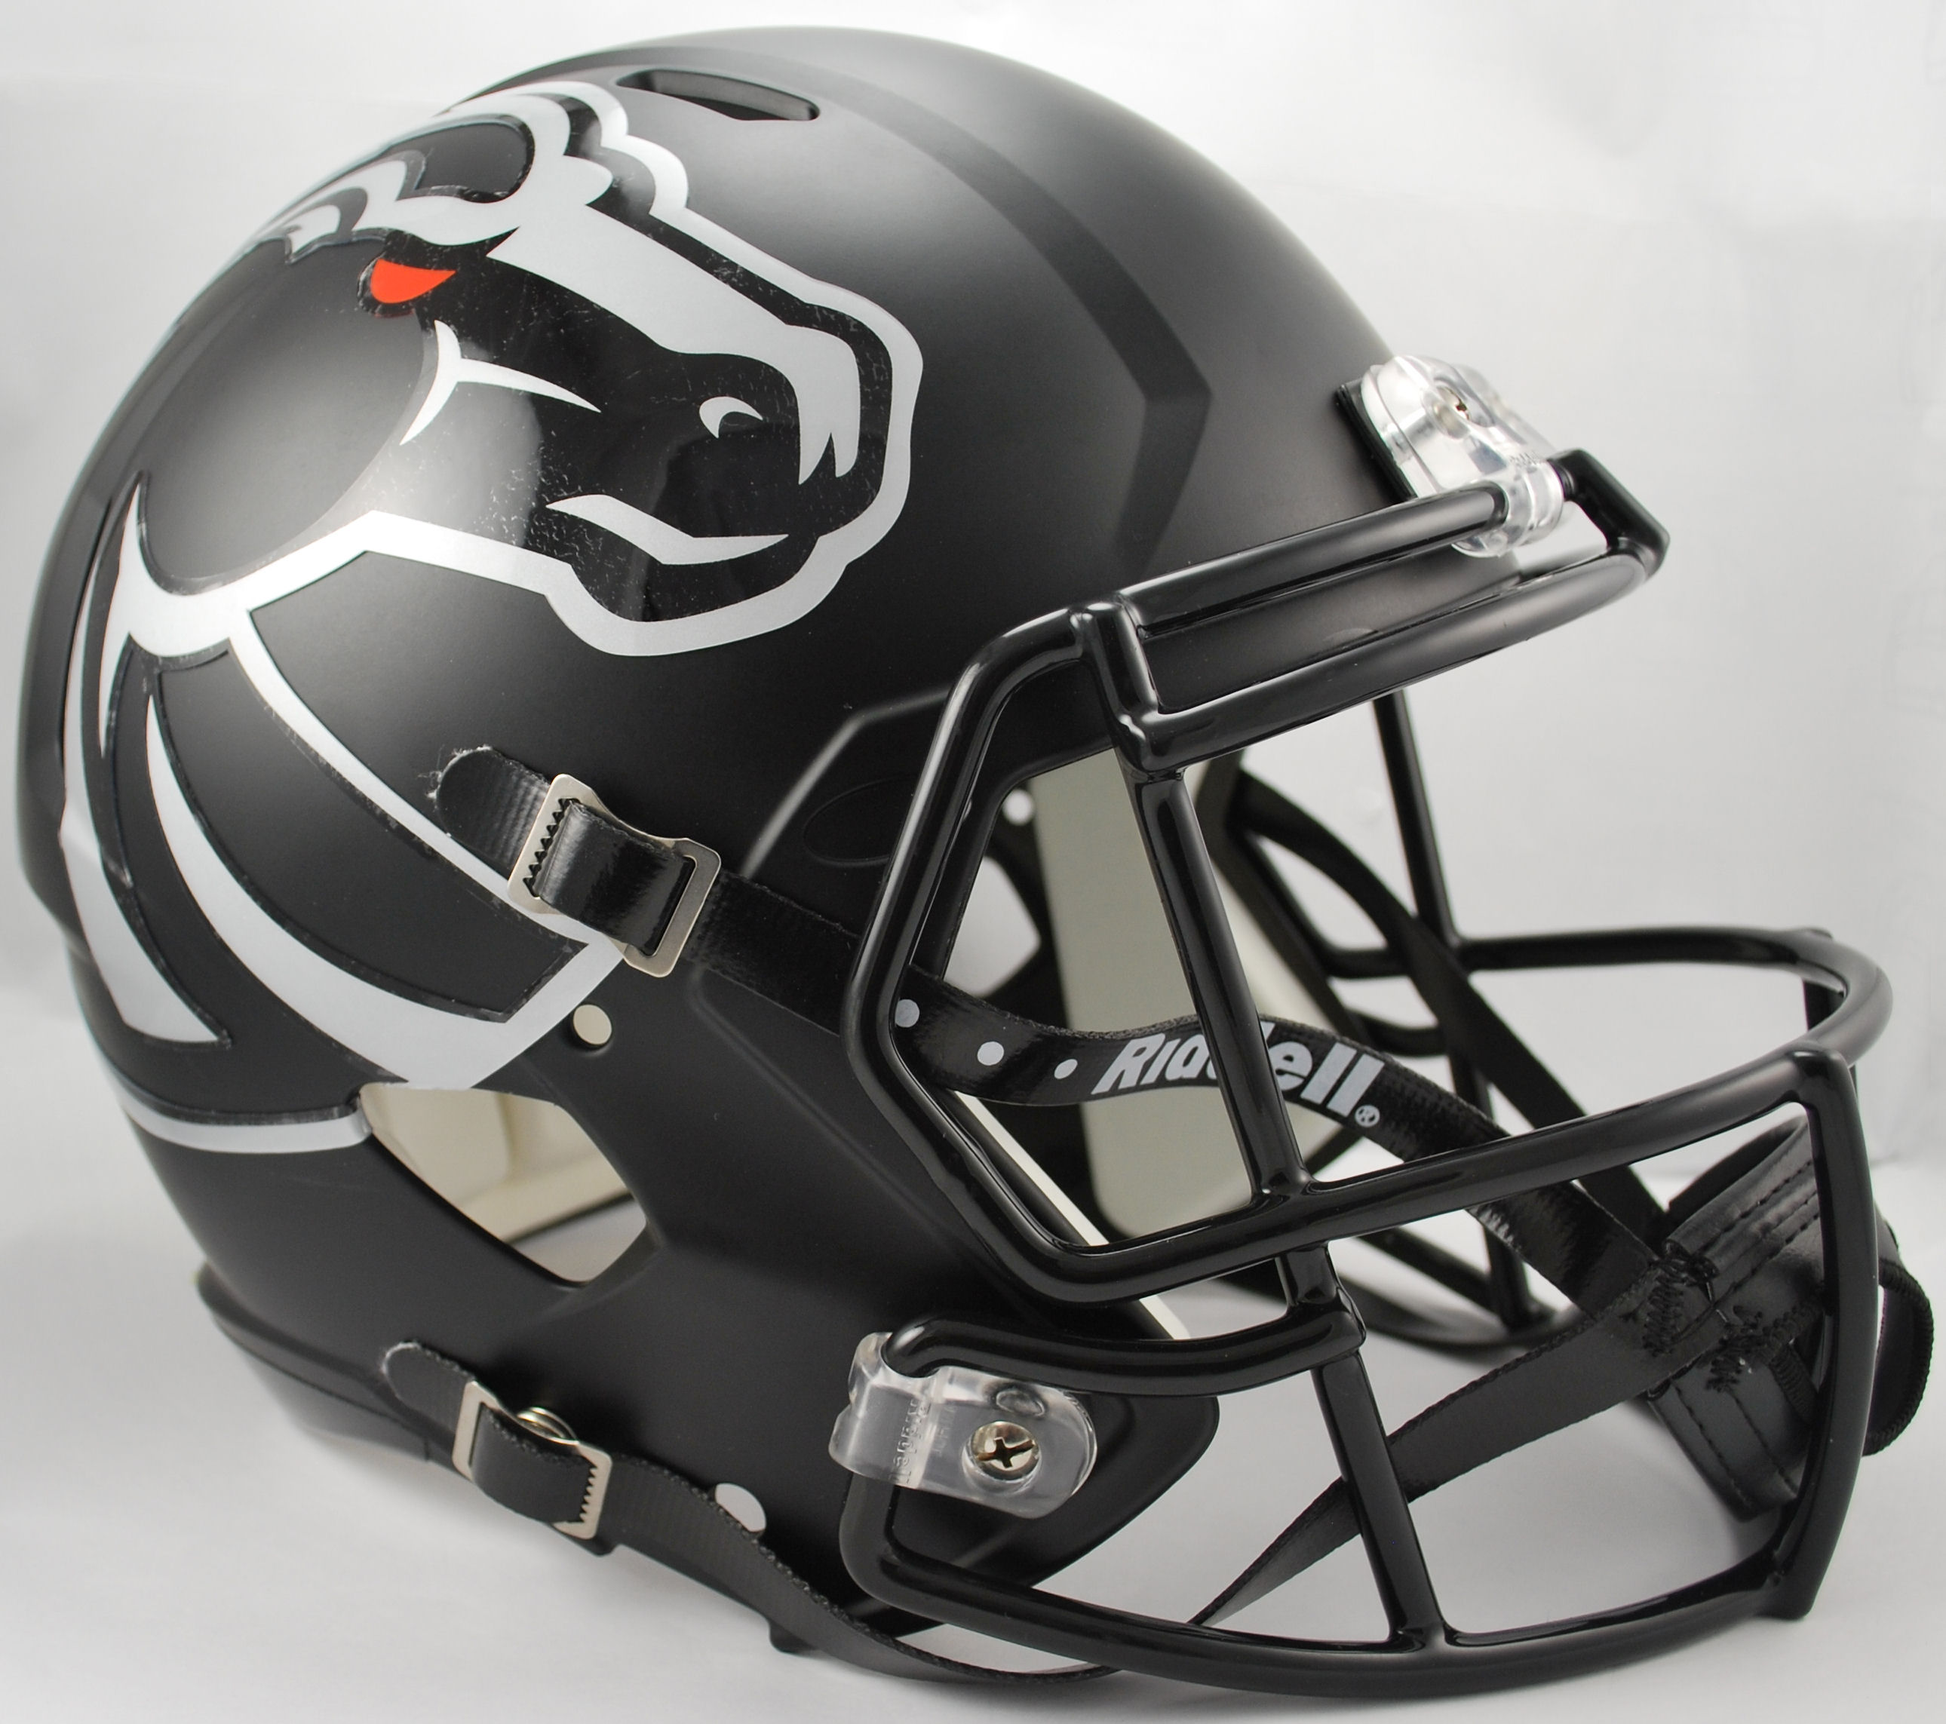 Boise State Broncos full size replica helmet